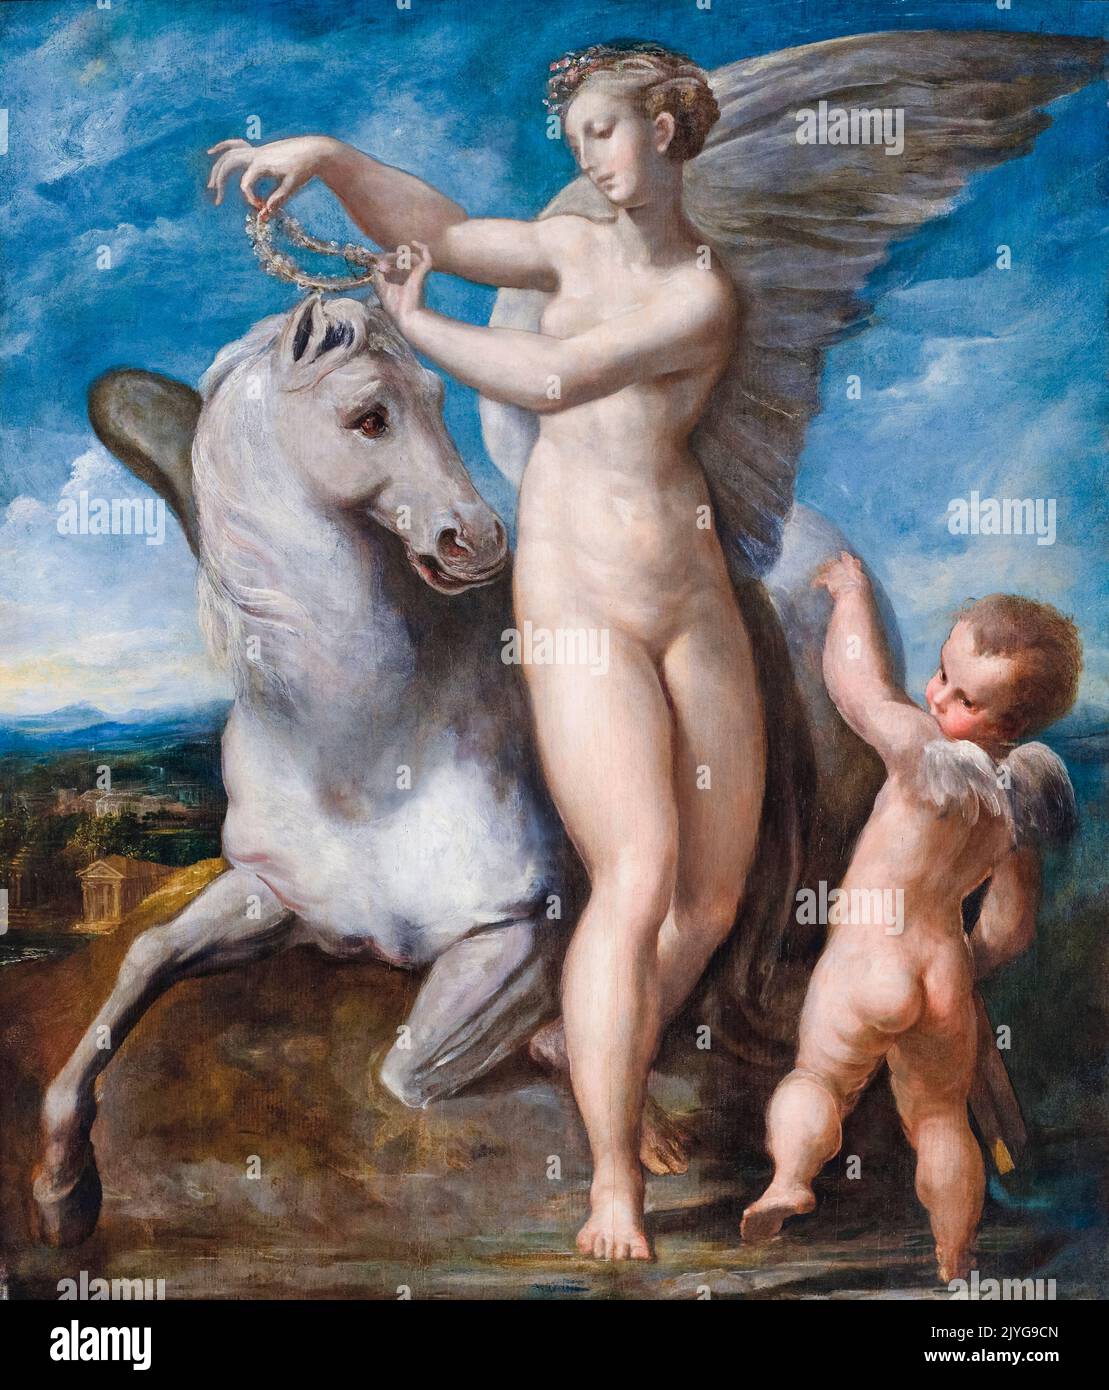 Girolamo Francesco Maria Mazzola a appelé Parmigianino, peinture, Saturne et Philyra, huile sur panneau, 1530-1535 Banque D'Images